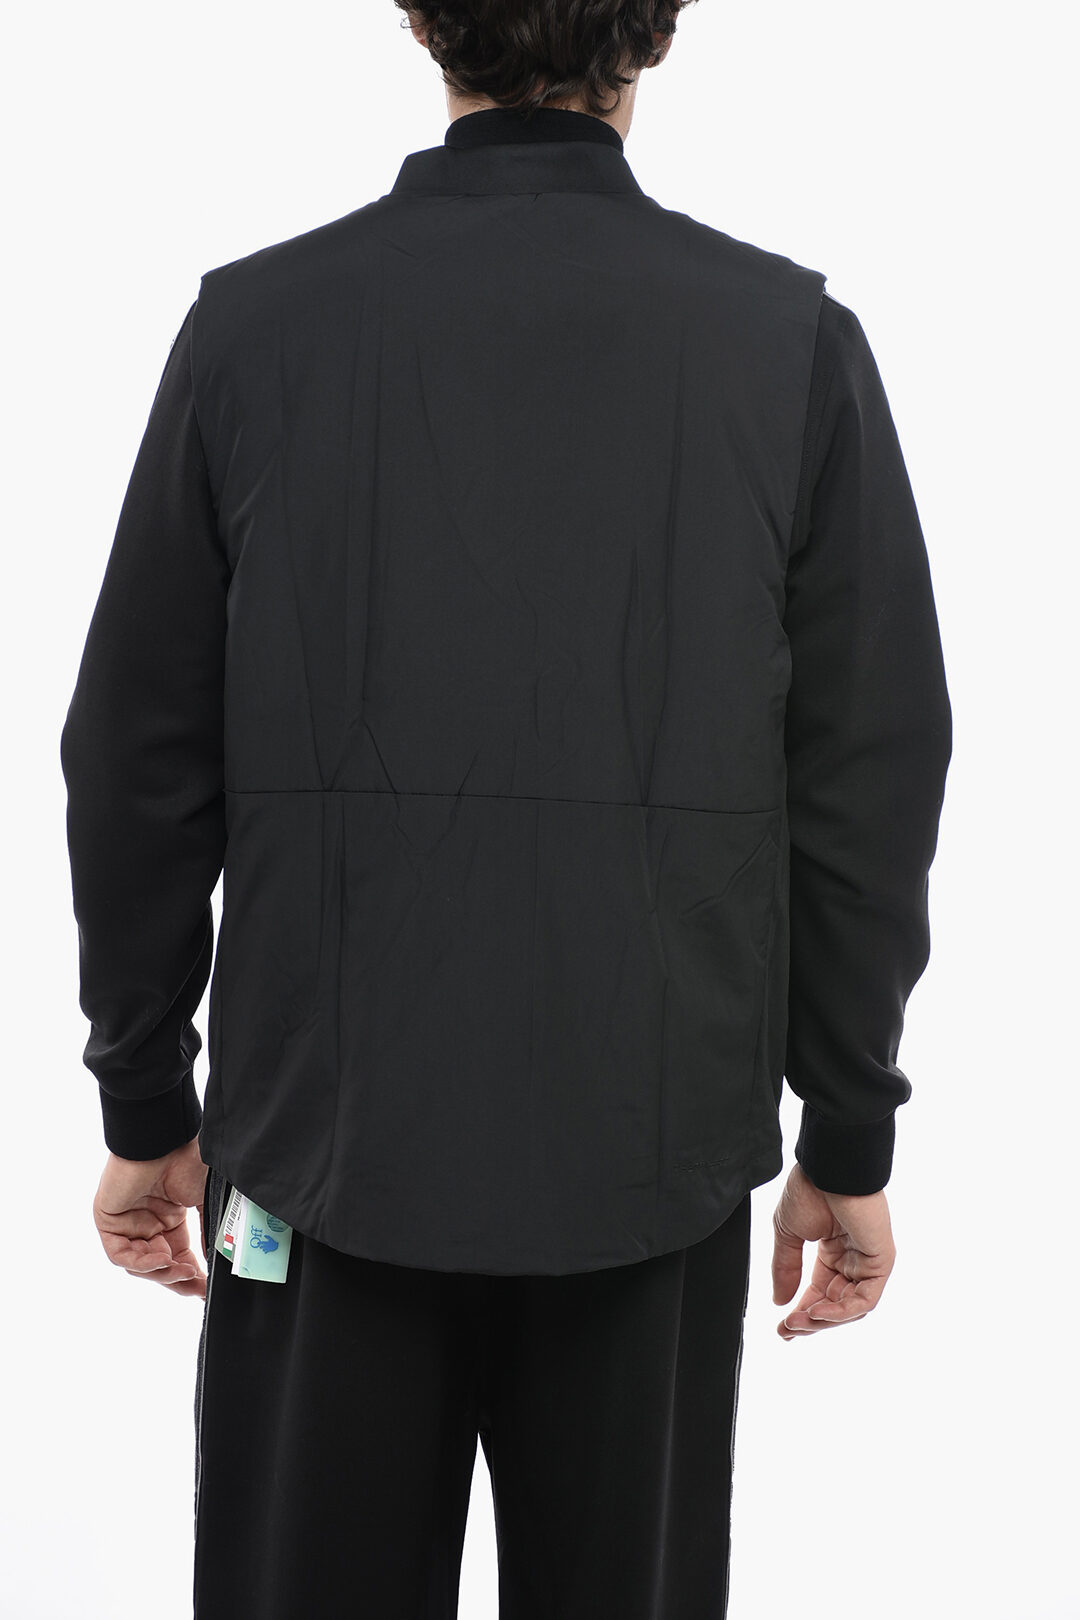 Nike Therma Fit Sleeveless Padded Jacket men - Glamood Outlet